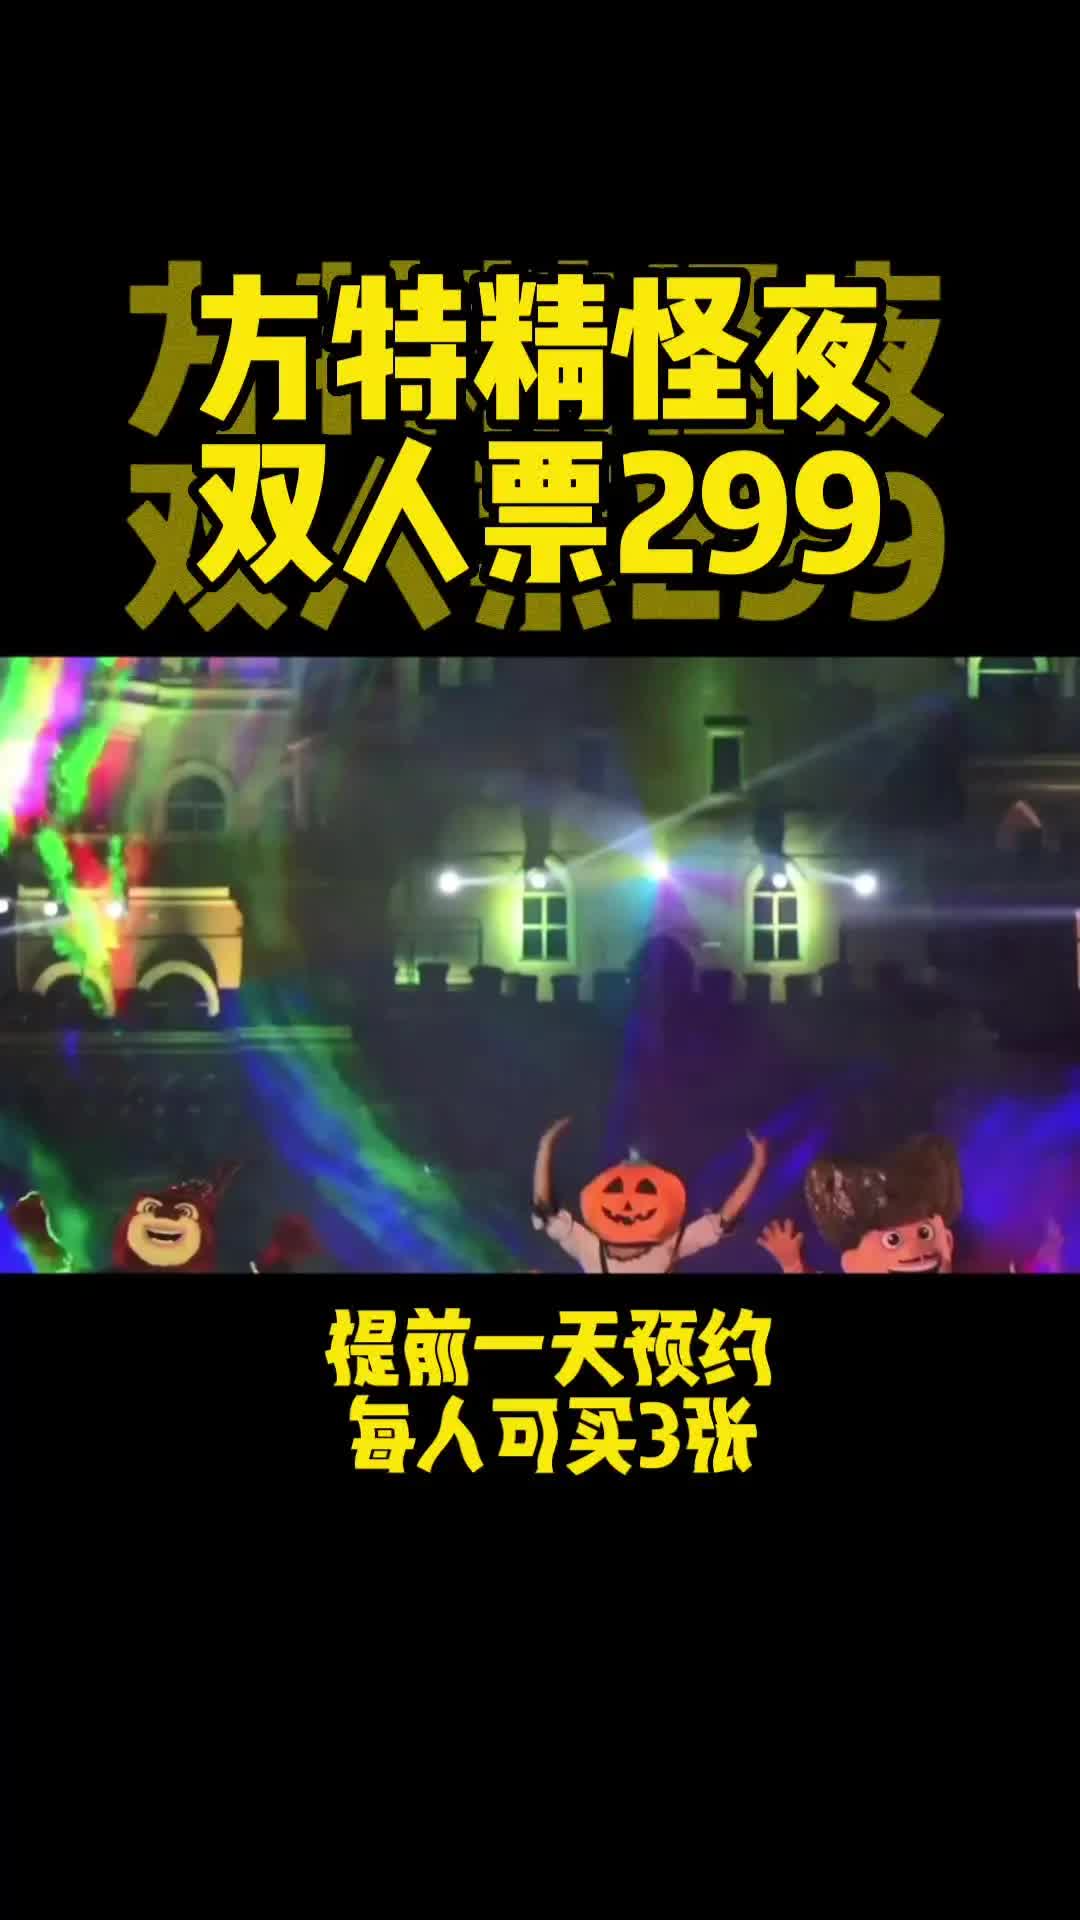 青岛方特梦幻王国精怪双人票299